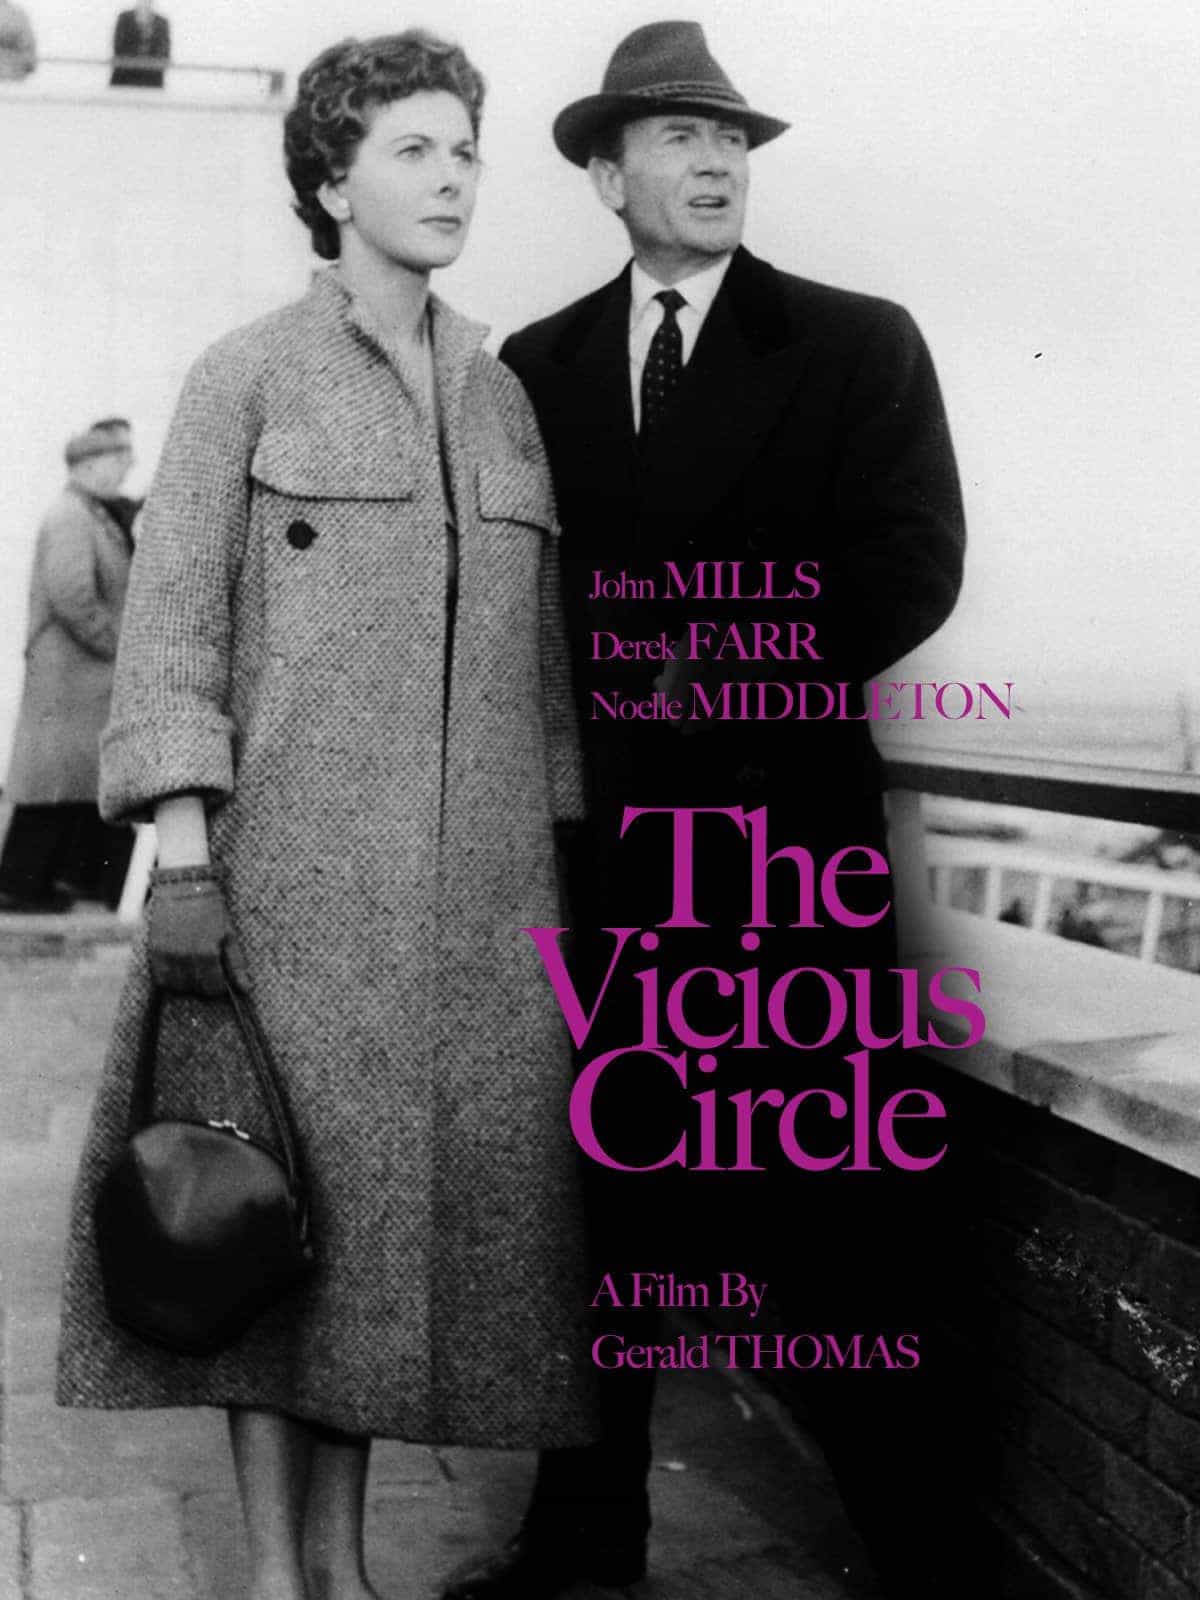 The VIcious Circle